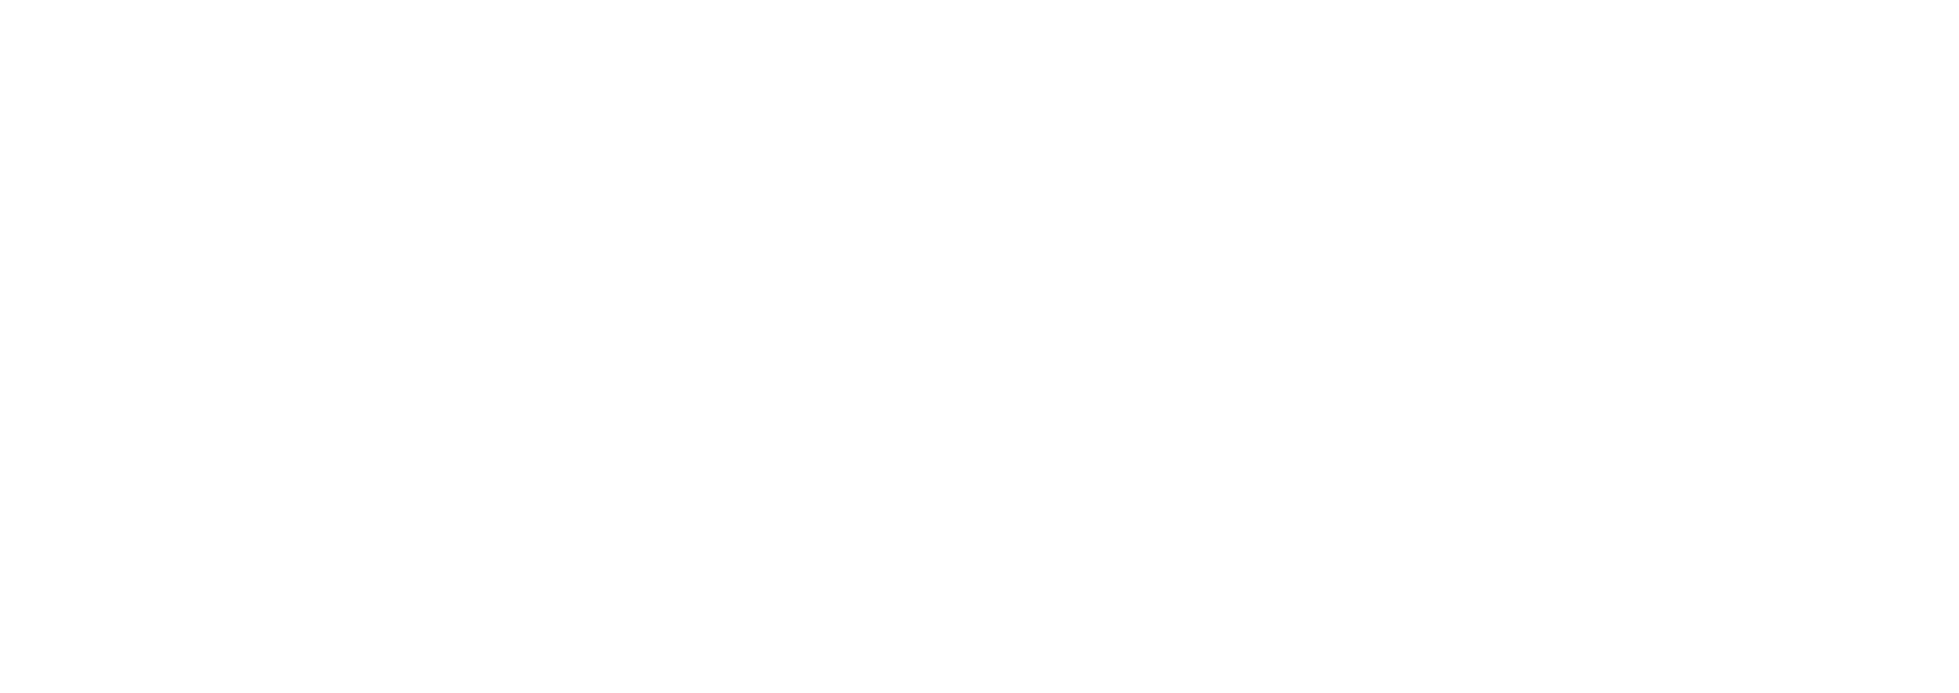 Punta Venado